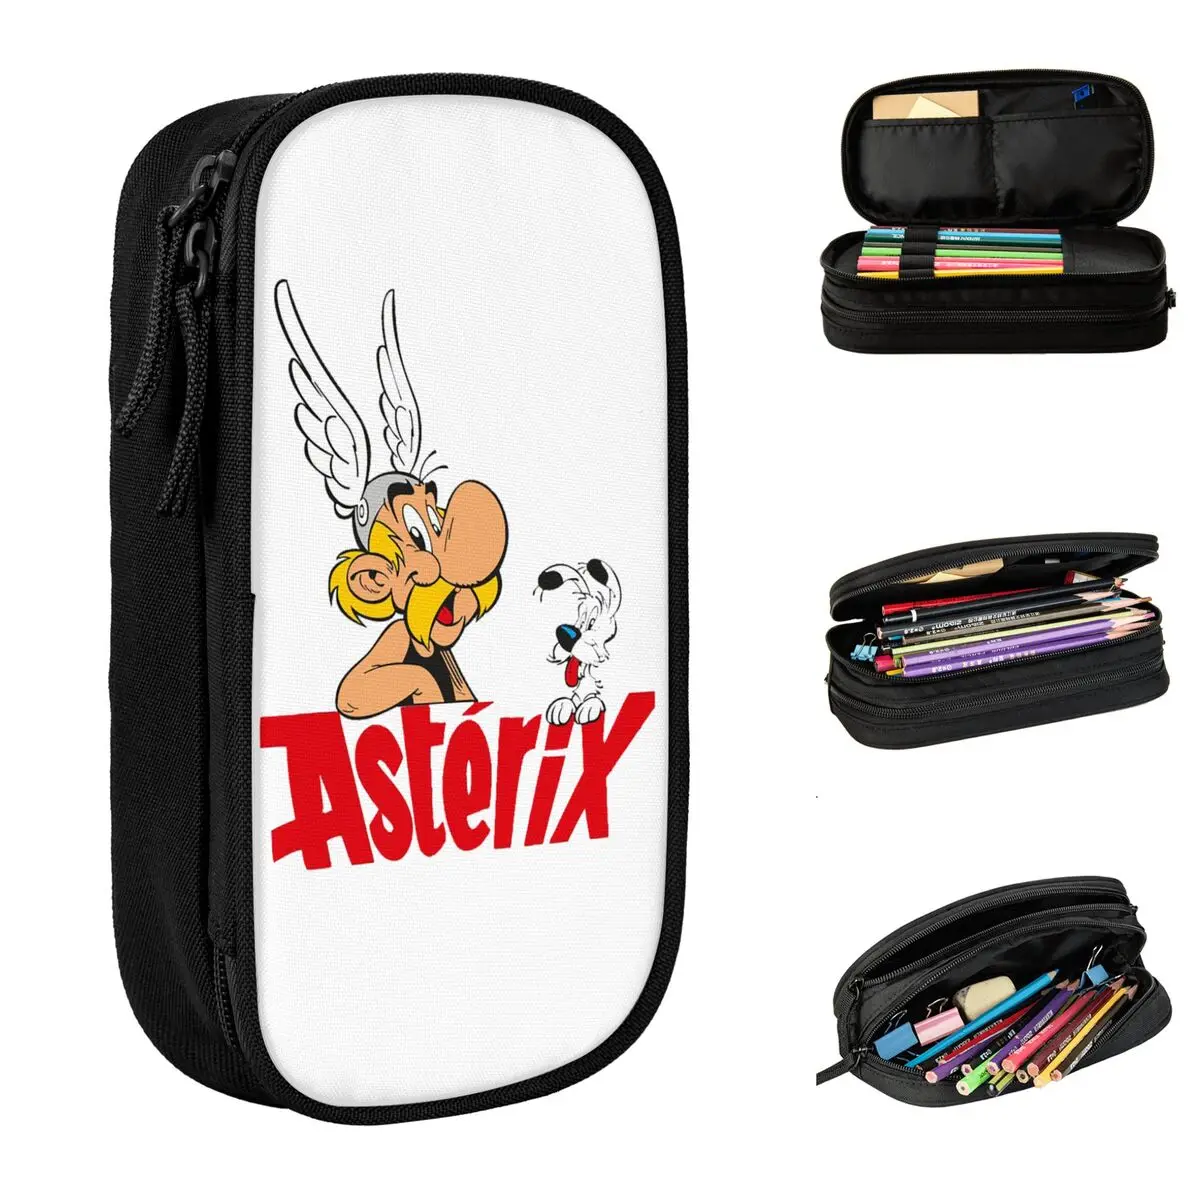 

Карандаш Dogmatix и Asterix, двойной слой, большой емкости, для школы Asterix и Obelix, фотокарандаш, канцелярские товары, отличные подарки